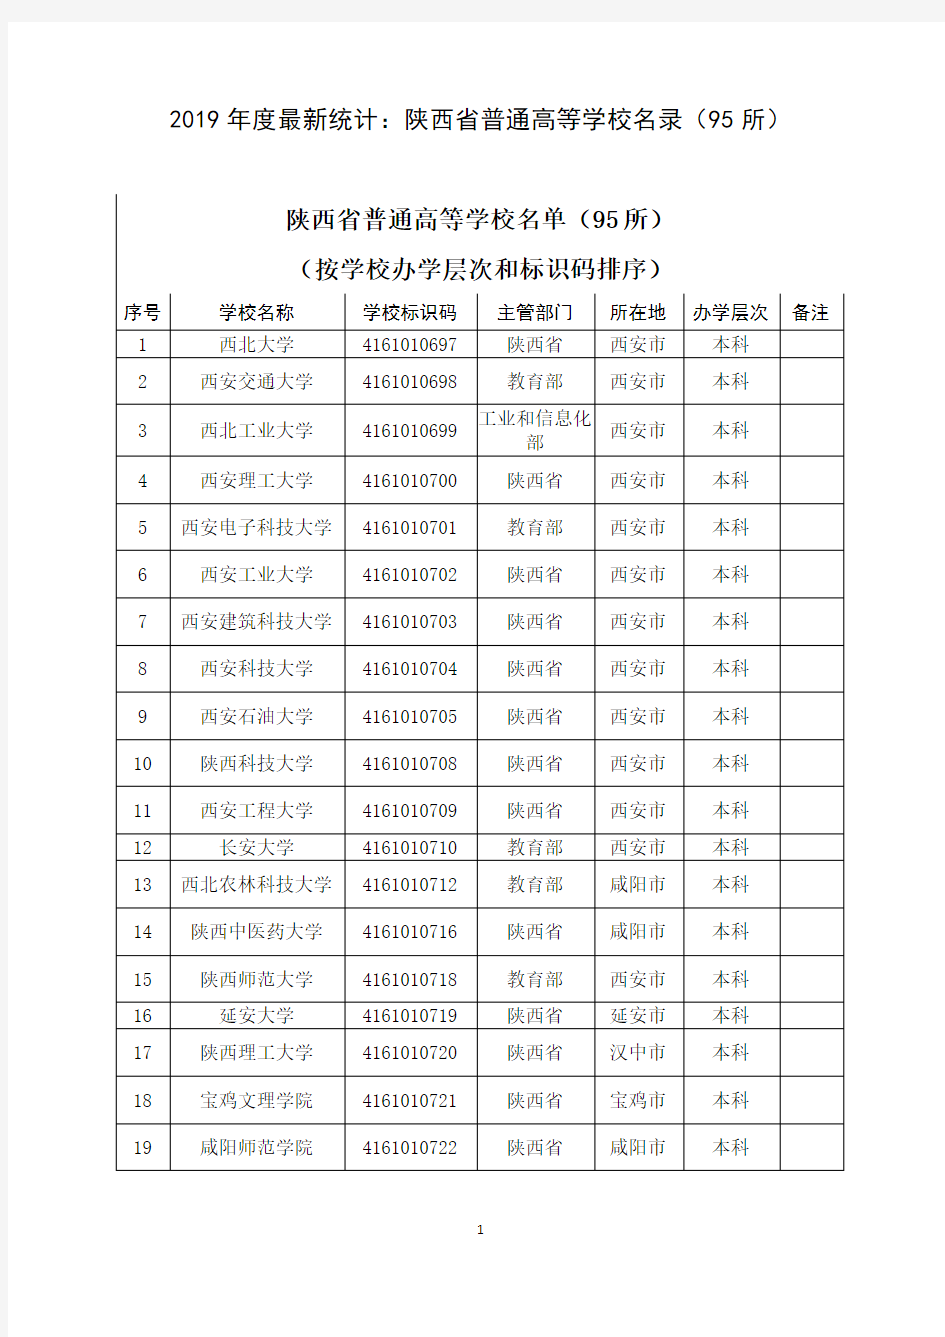 2019年度最新统计：陕西省普通高等学校名录(95所)